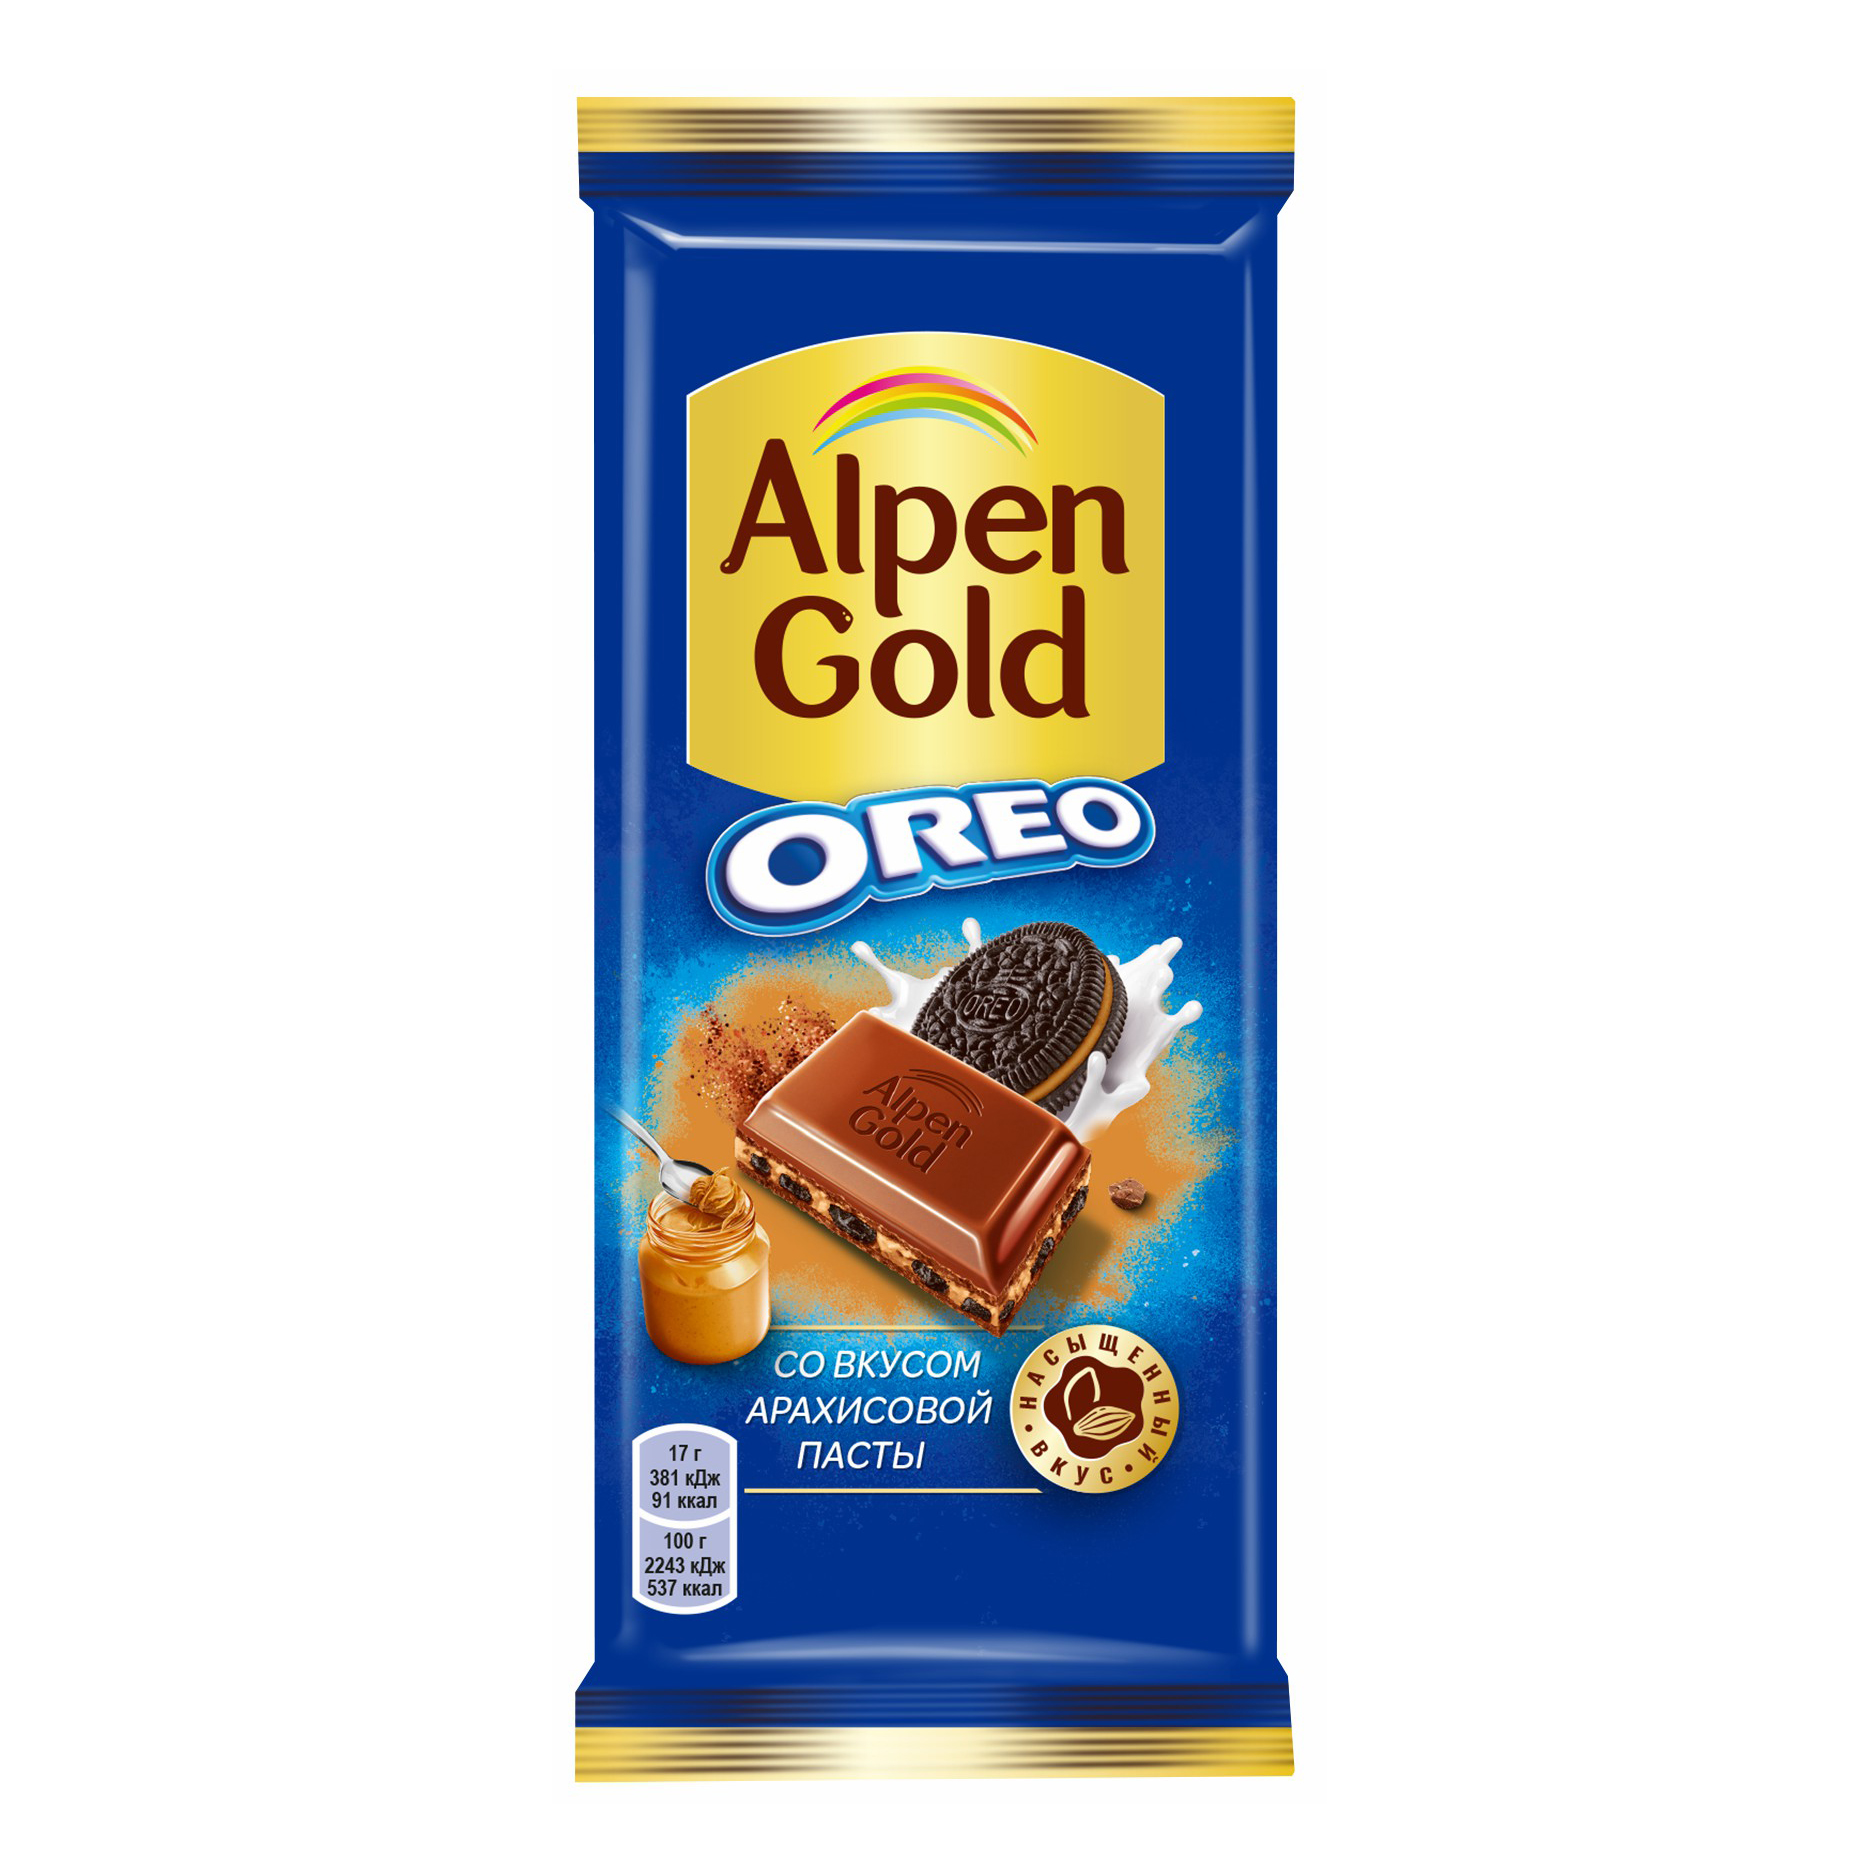 Плитка Alpen Gold Оreo молочная с начинкой со вкусом арахисовой пасты и печеньем 90 г